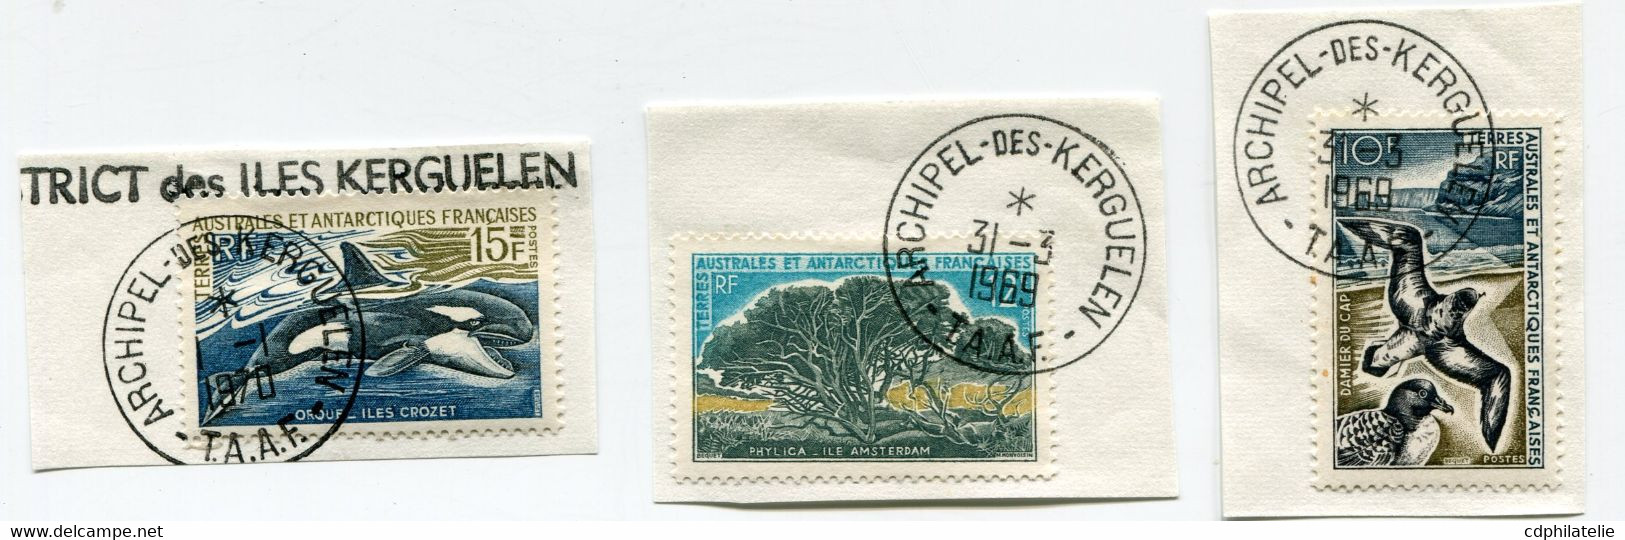 T. A. A. F. N°28 / 30 FAUNE ET FLORE OBL. ARCHIPEL-DES-KERGUELEN 31-3-1969 ET 1-1-1970 - Used Stamps